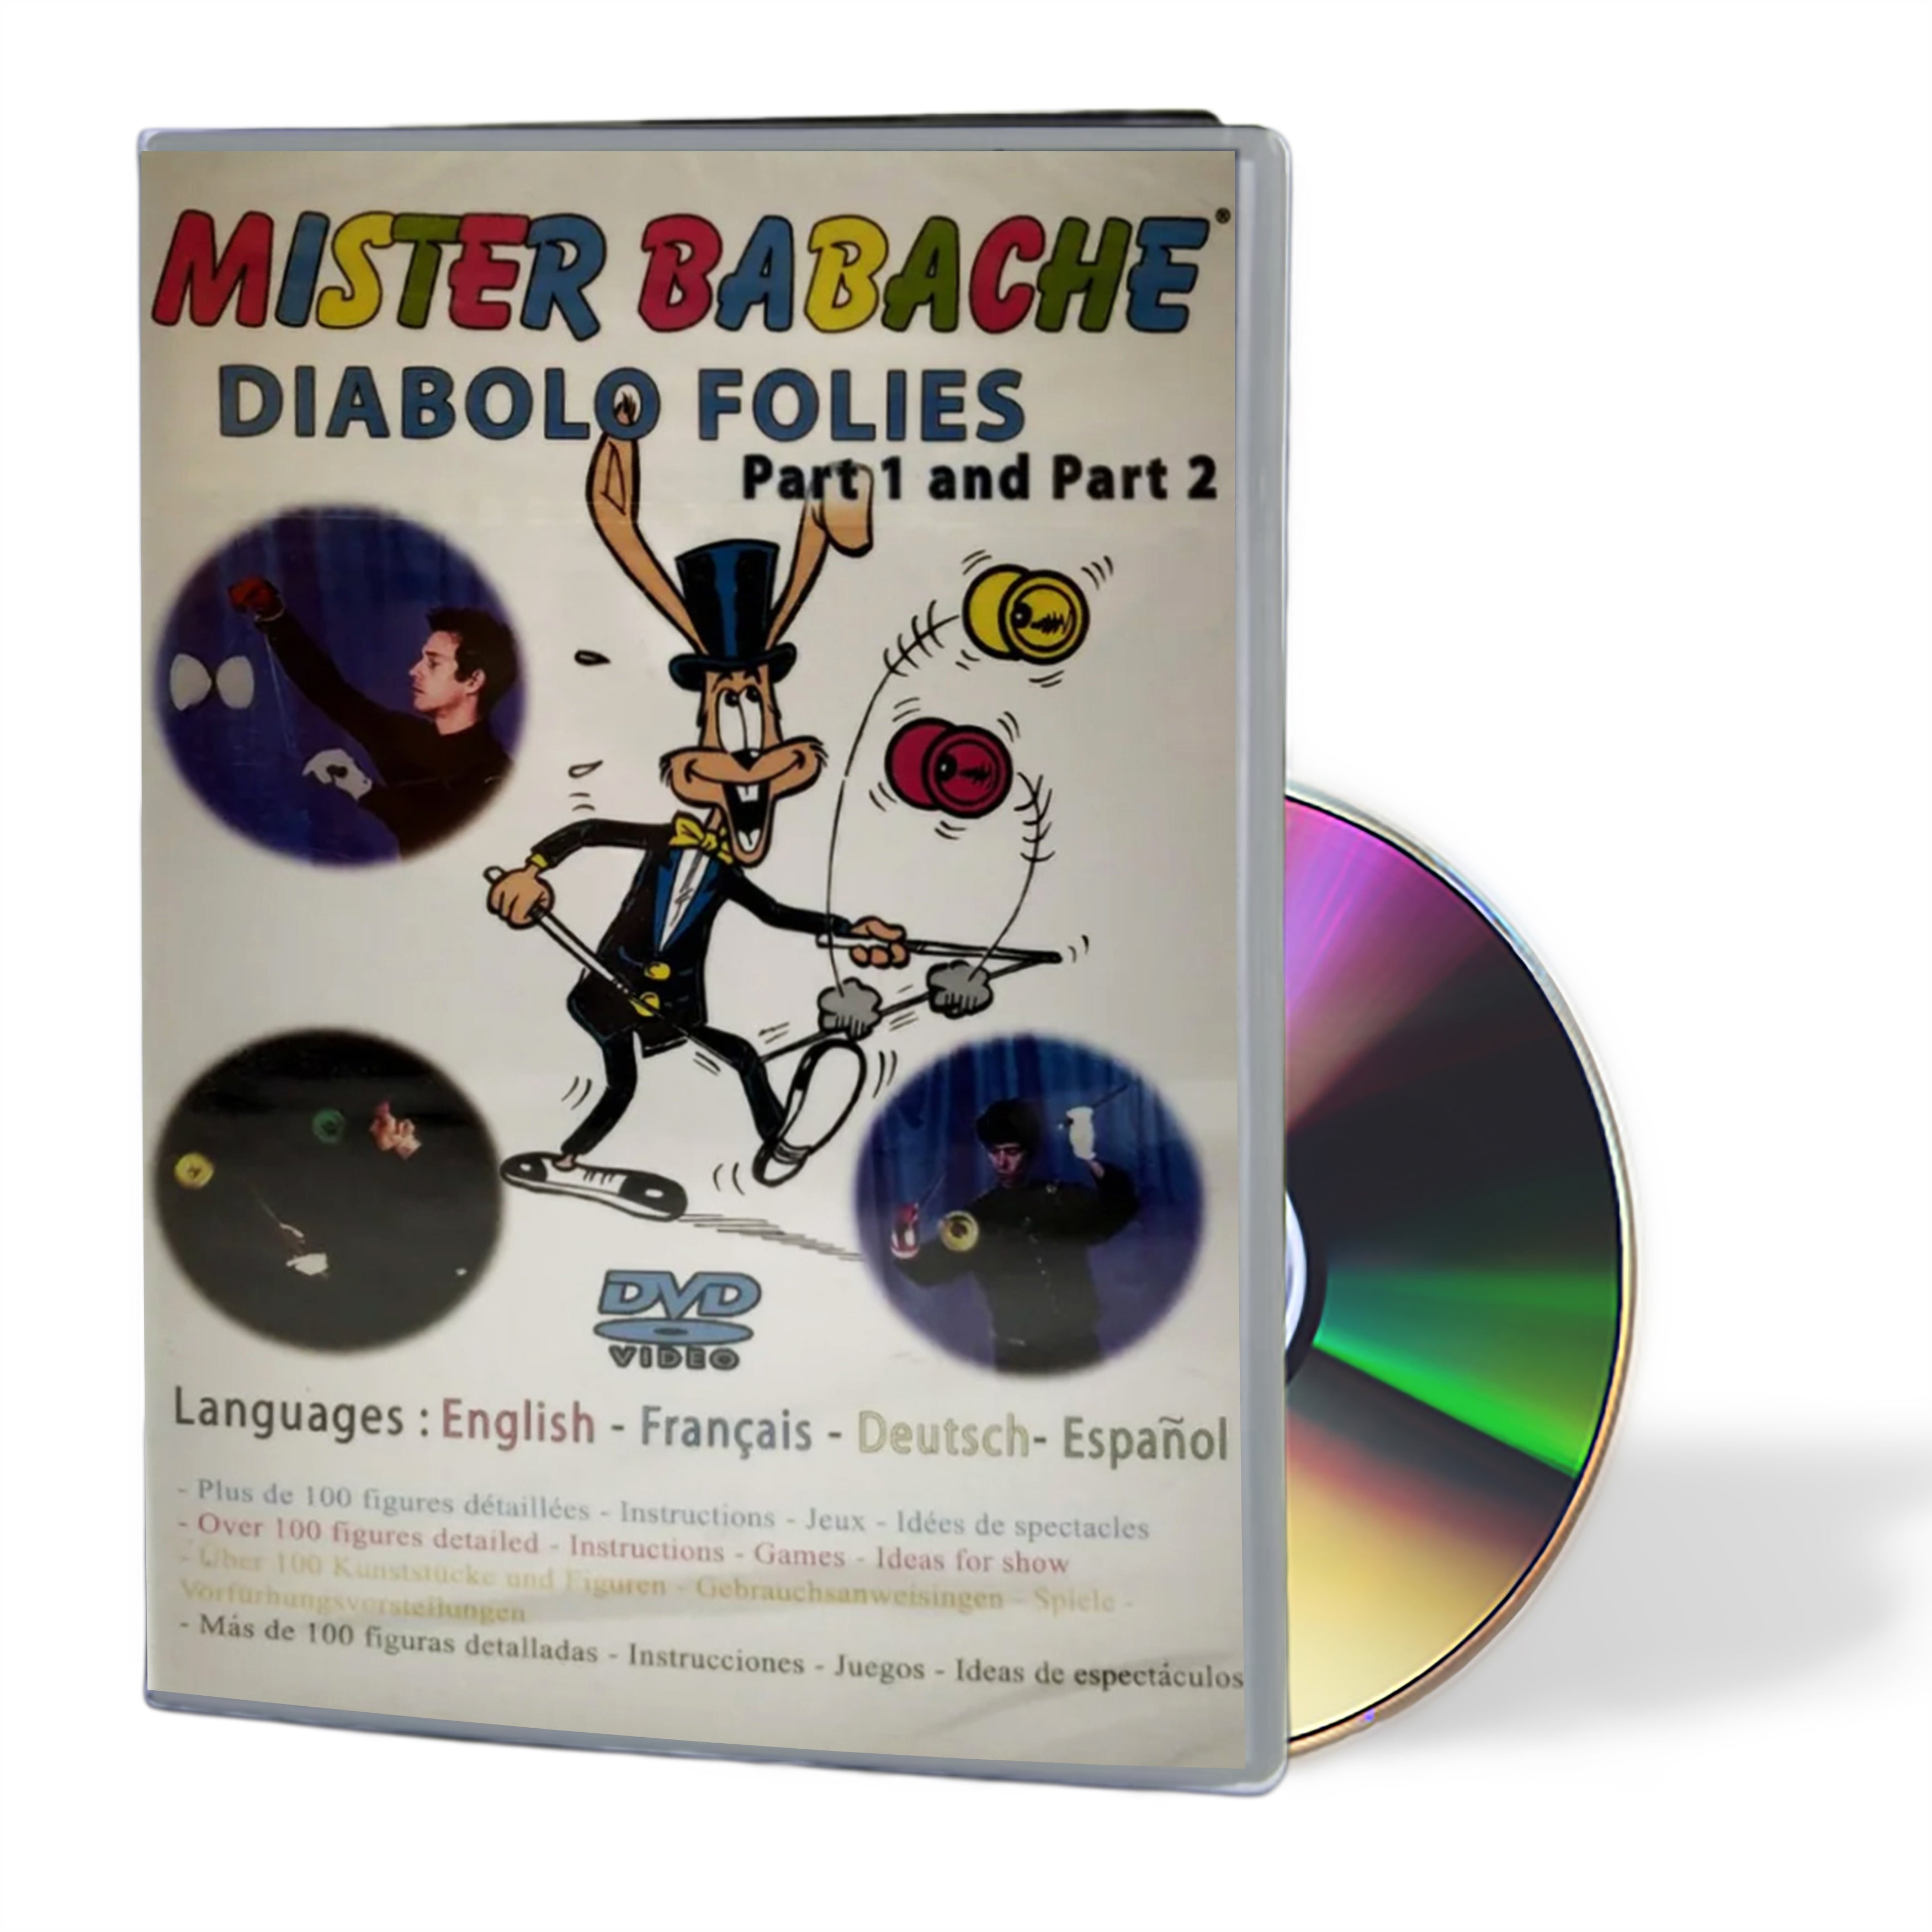 Mr Babache Diabolo Folies Part 1 and Part 2 DVD